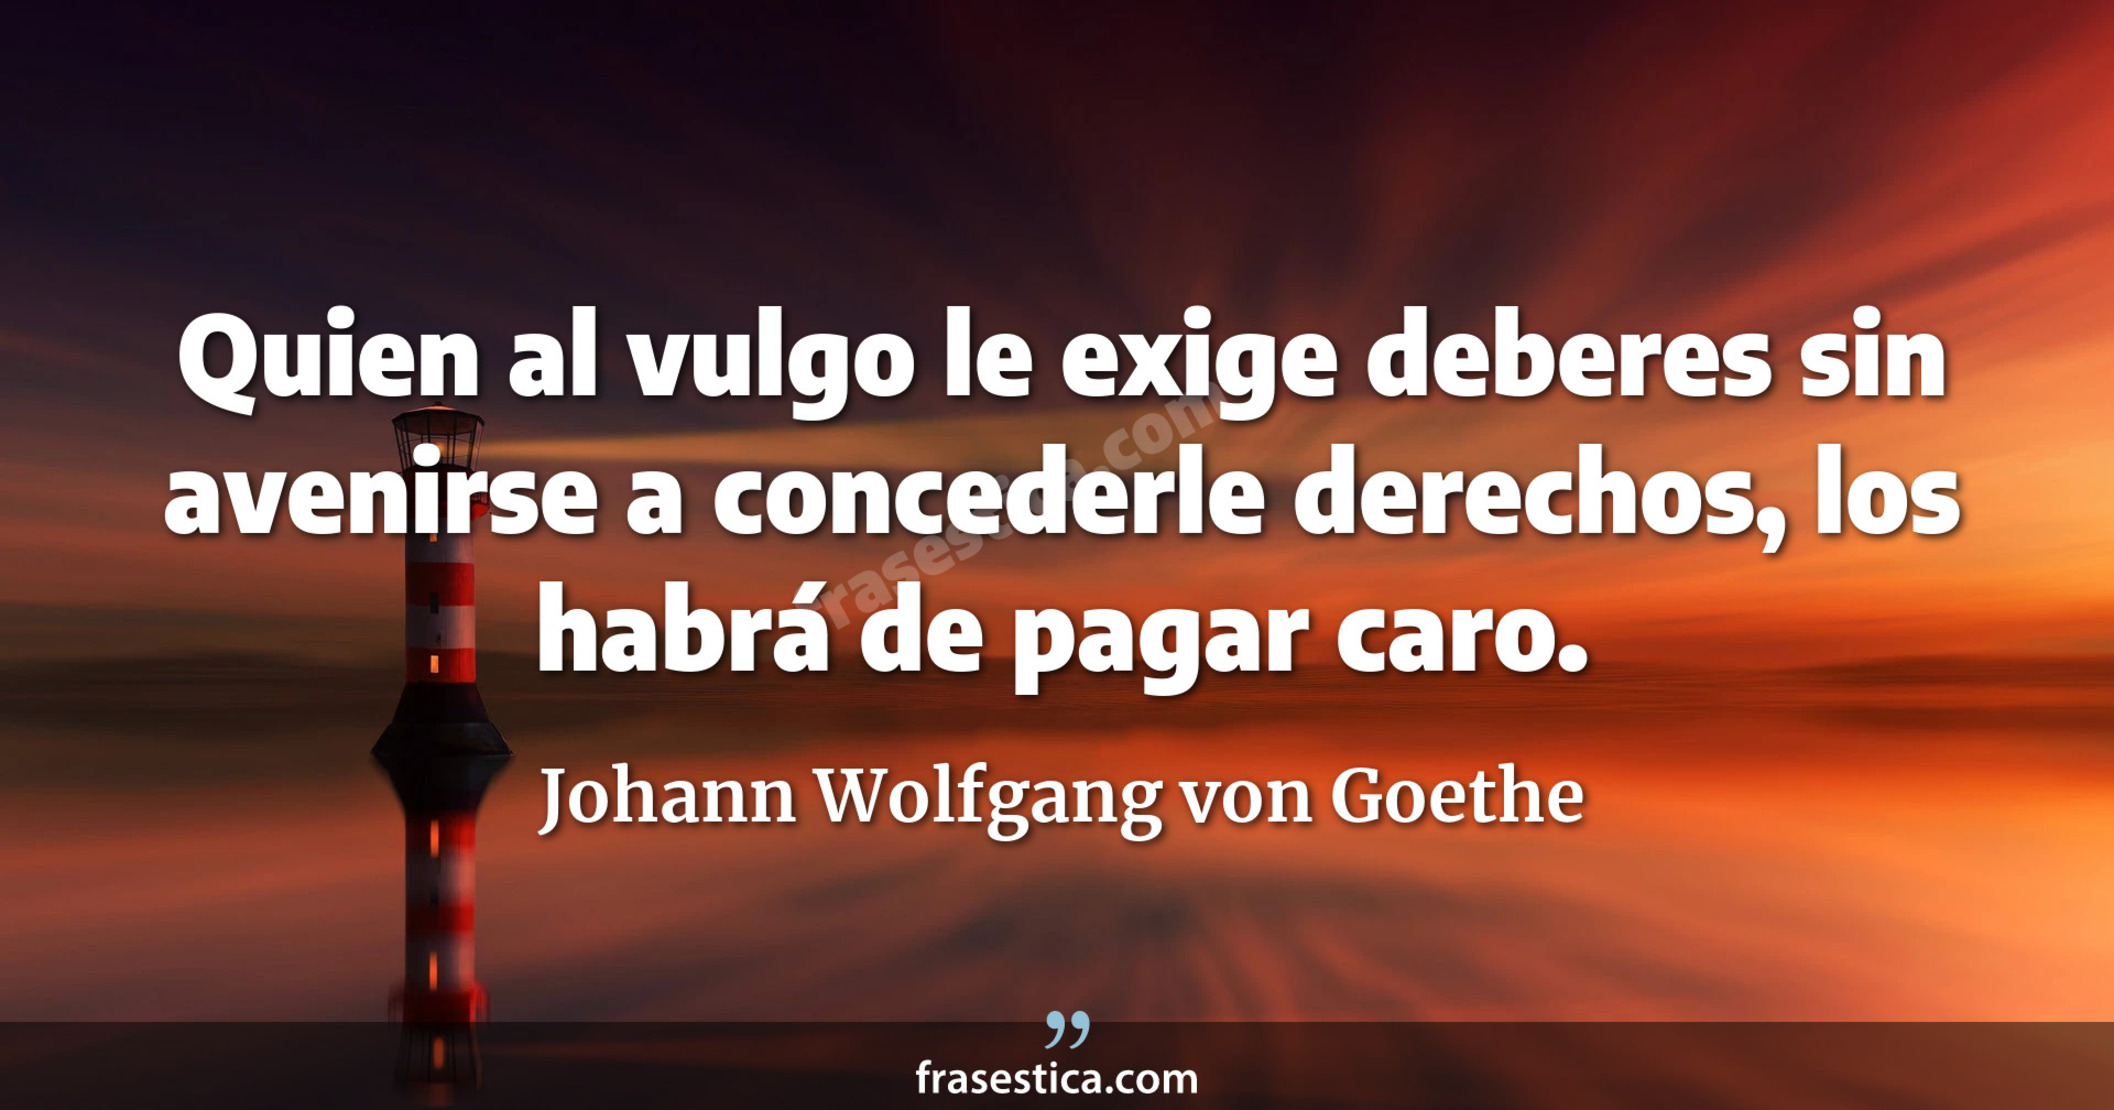 Quien al vulgo le exige deberes sin avenirse a concederle derechos, los habrá de pagar caro. - Johann Wolfgang von Goethe